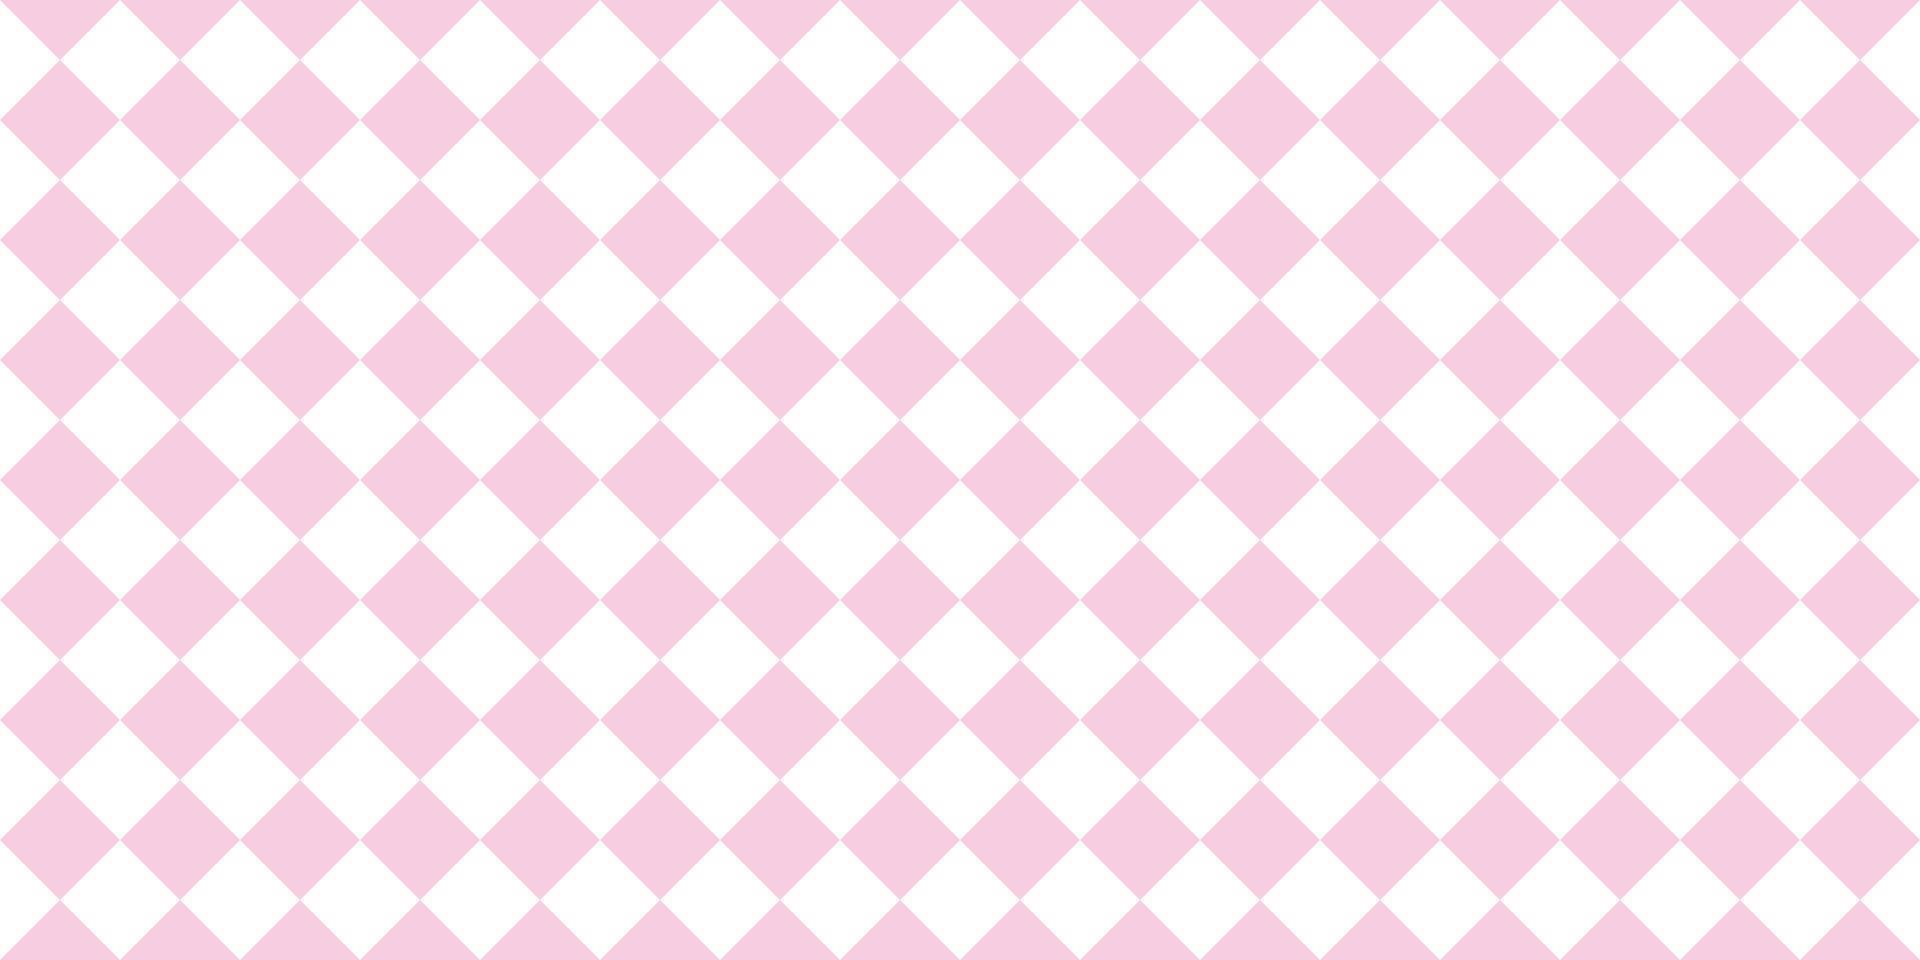 Weißer und rosafarbener nahtloser Wiederholungsmusterhintergrund. vektor